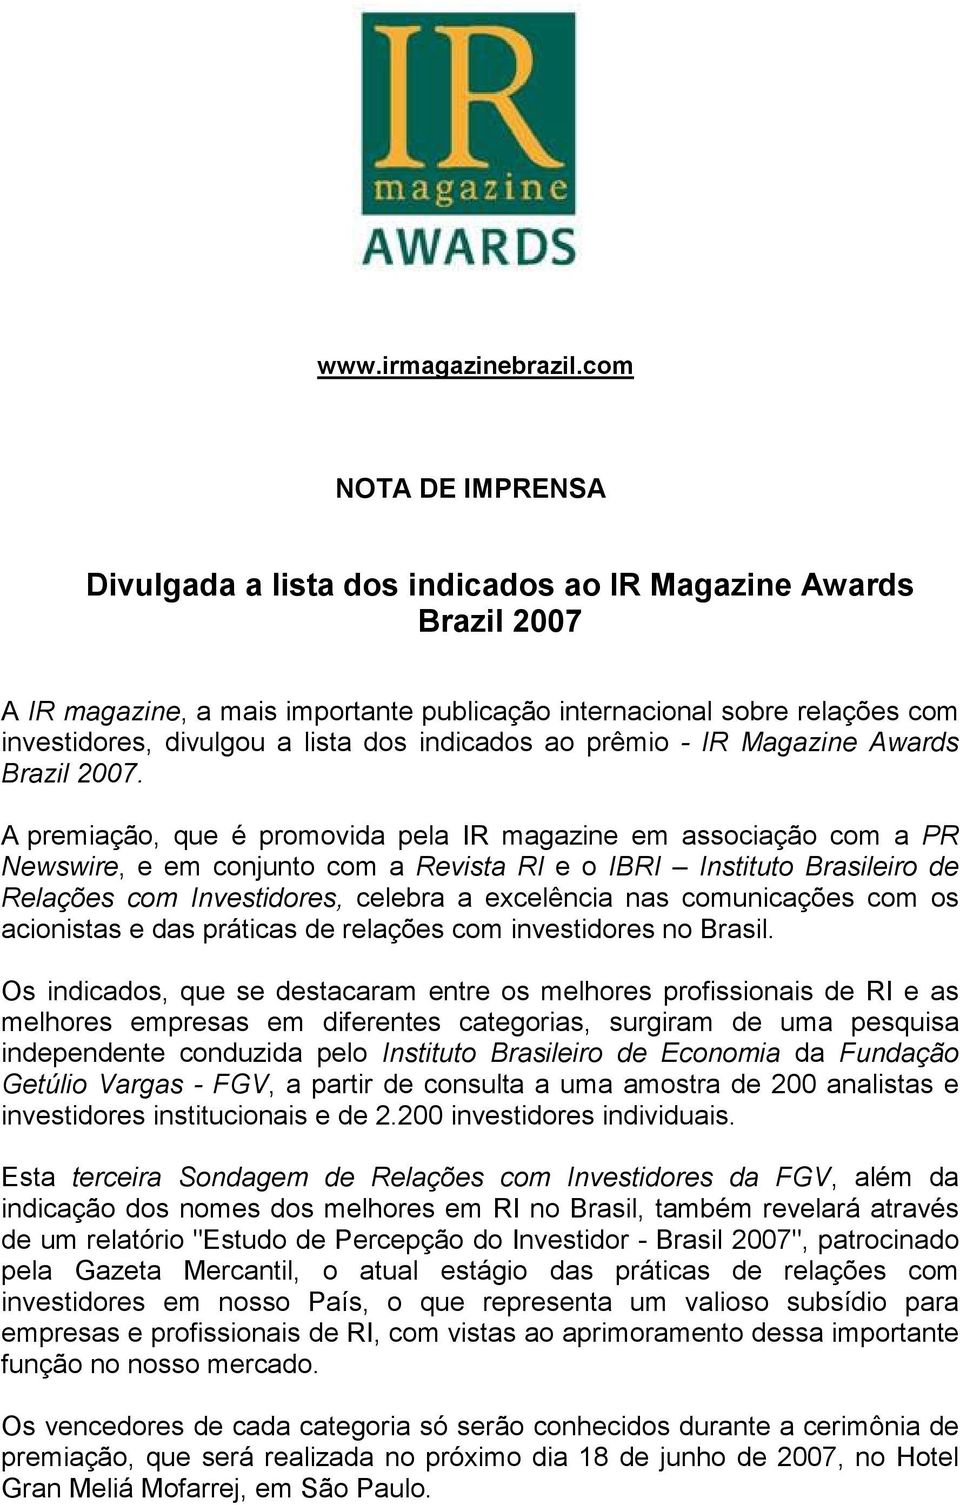 indicados ao prêmio - IR Magazine Awards Brazil 2007.